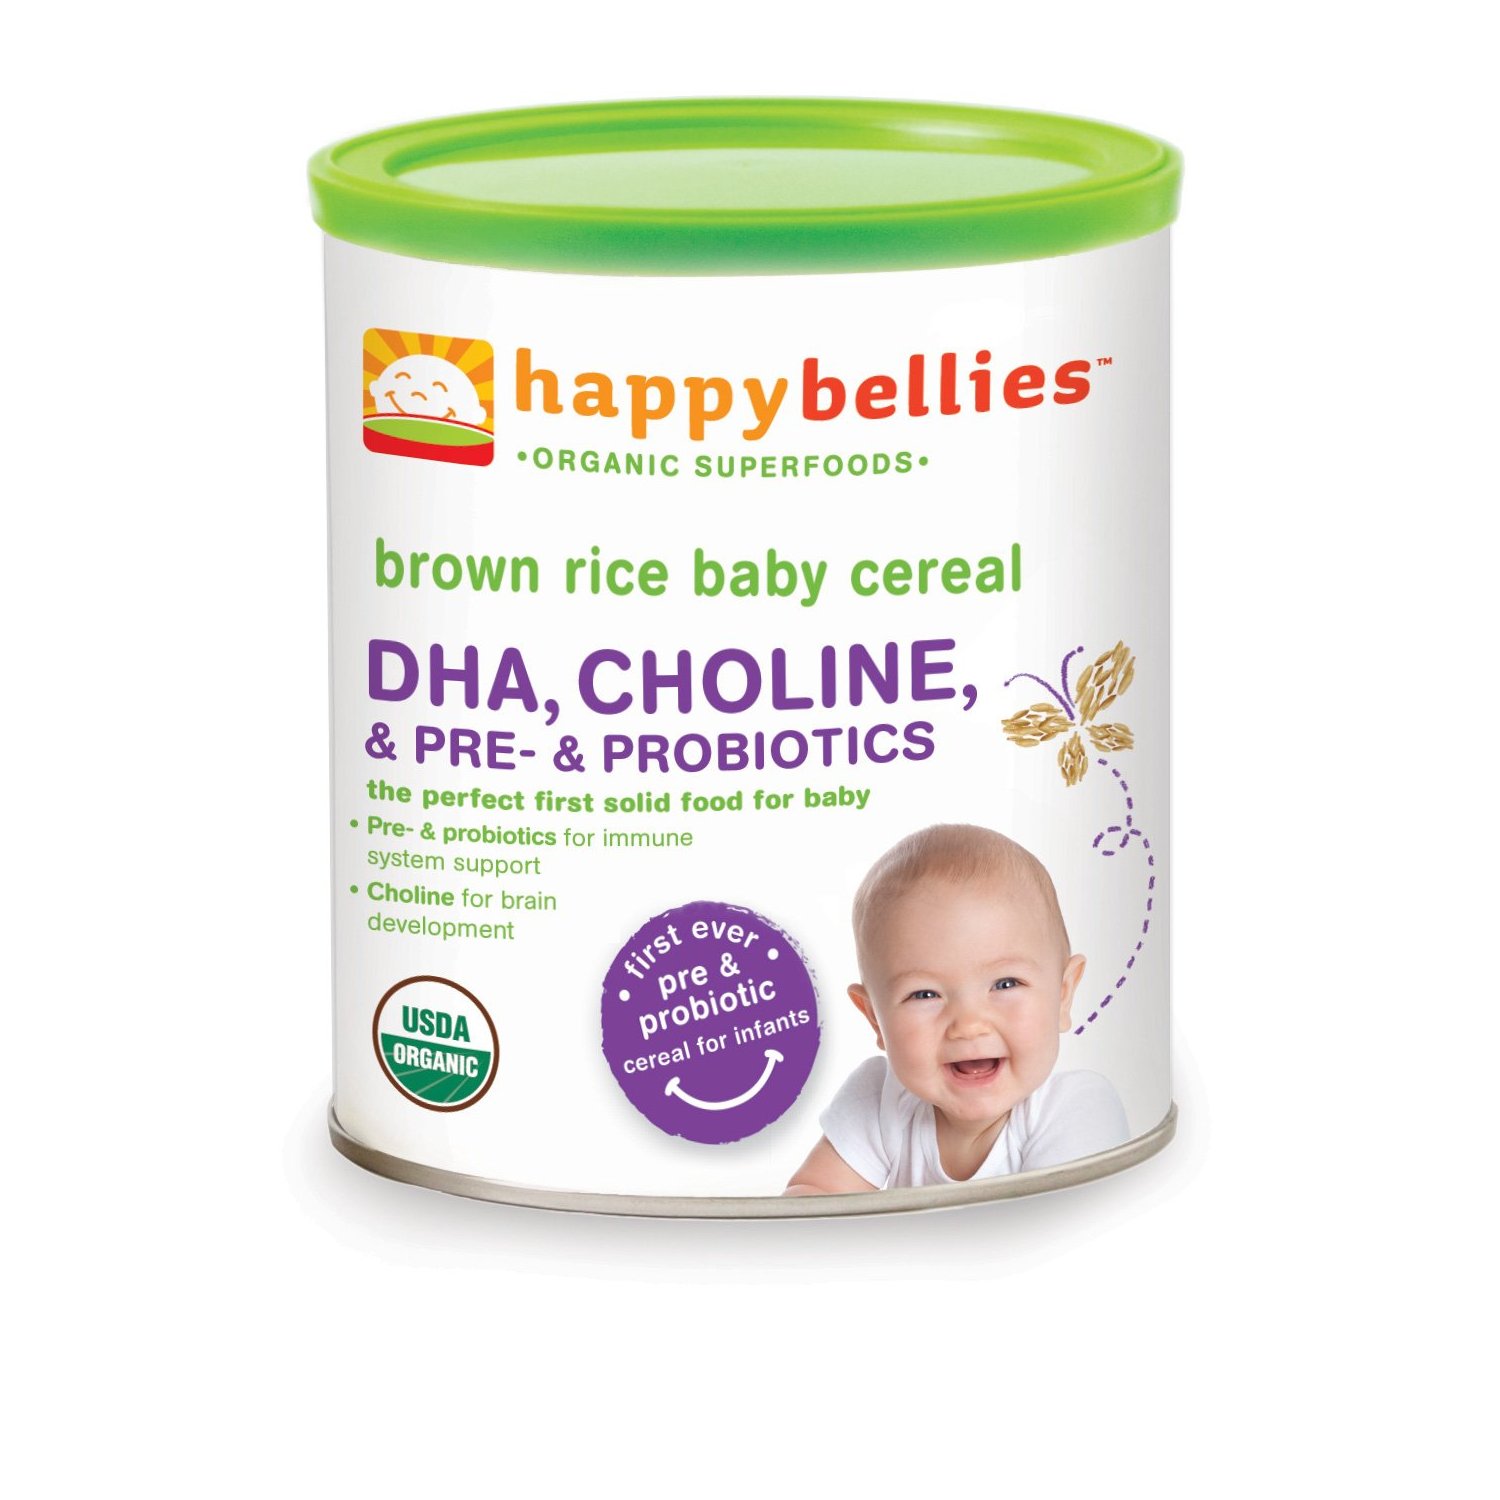 禧贝 Happy Bellies 糙米米粉（含DHA + Pre & Probiotics）6罐装，现仅售$16.95，免运费